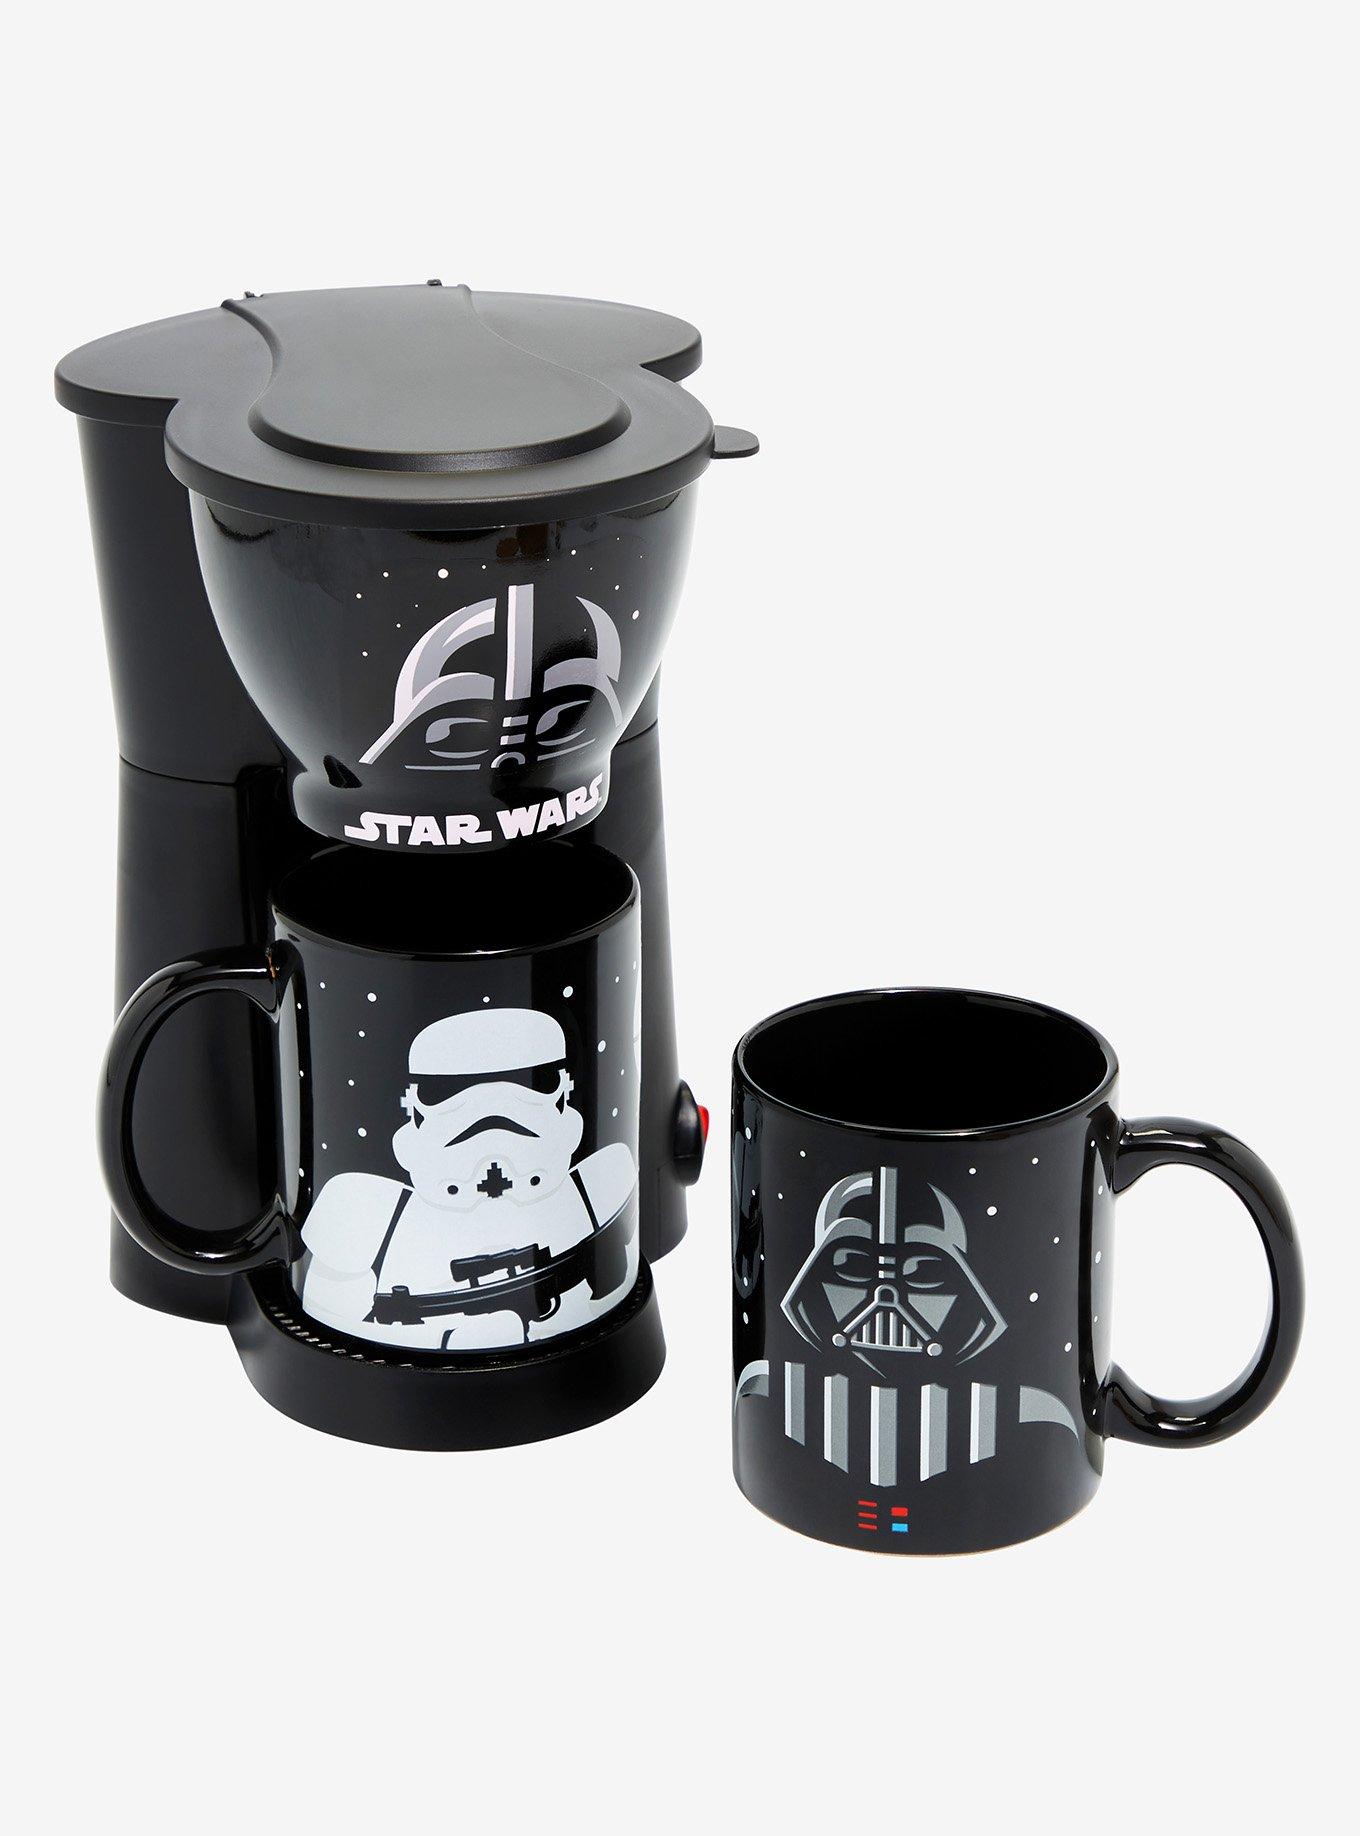 Star Wars, Kitchen, Star Wars Cup Coffee Maker